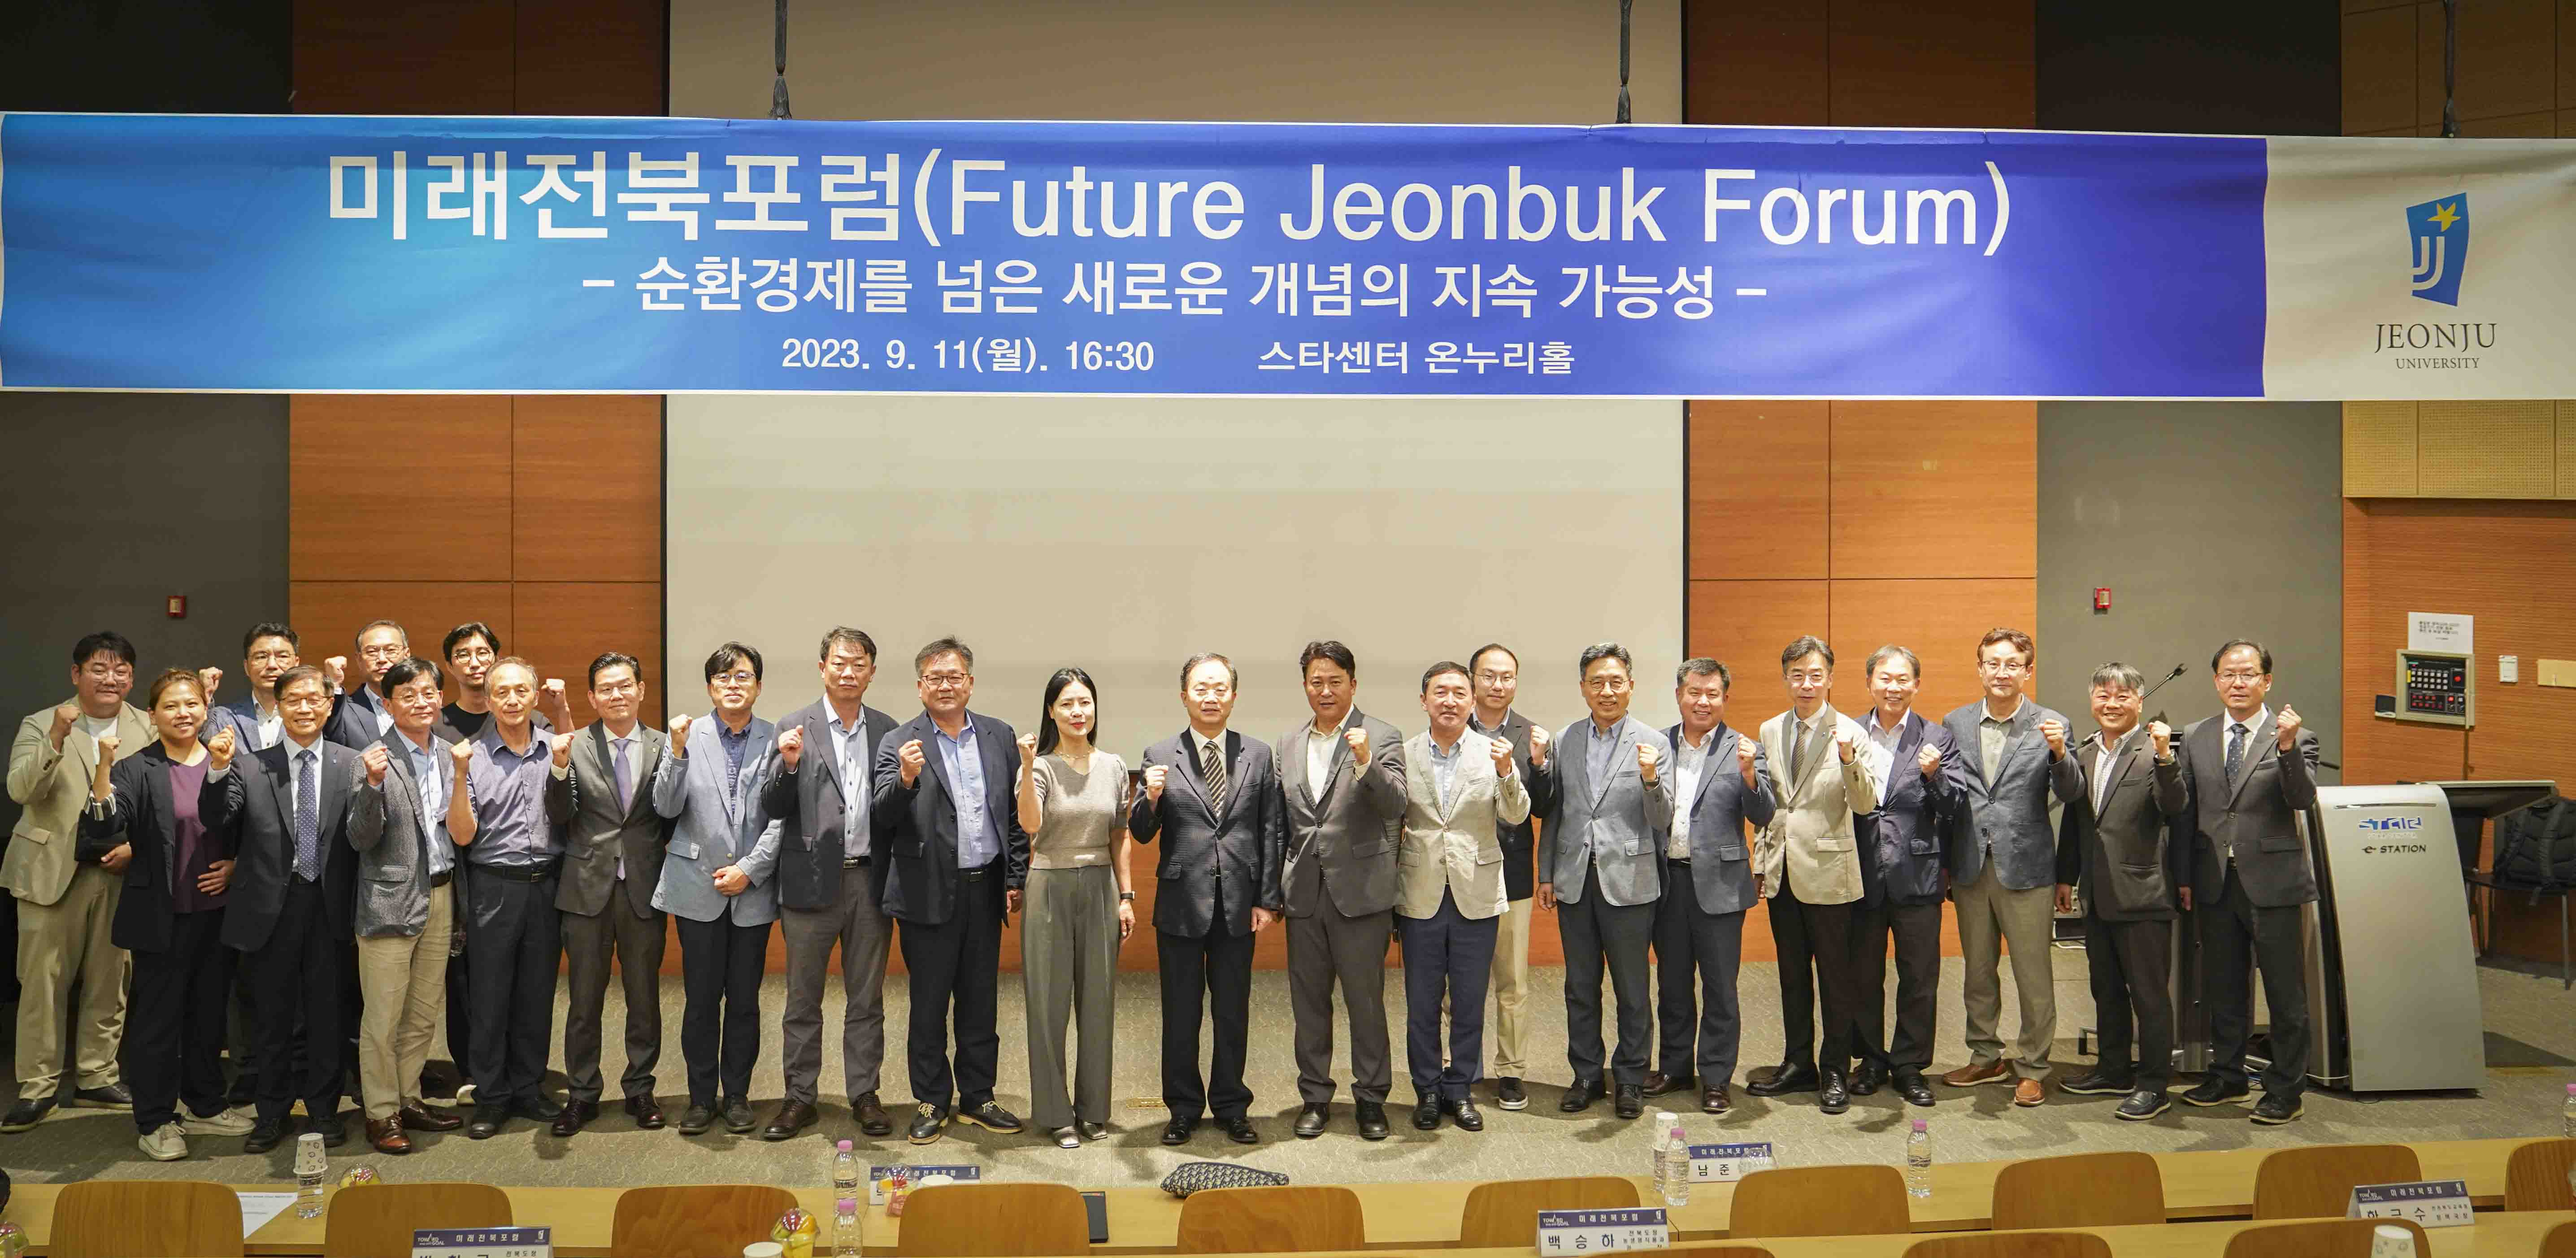 산학협력단, 미래전북포럼(Future Jeonbuk Forum) 전라북도의 산업 생태계 변환을 위한 싱크탱크 네트워크 구축